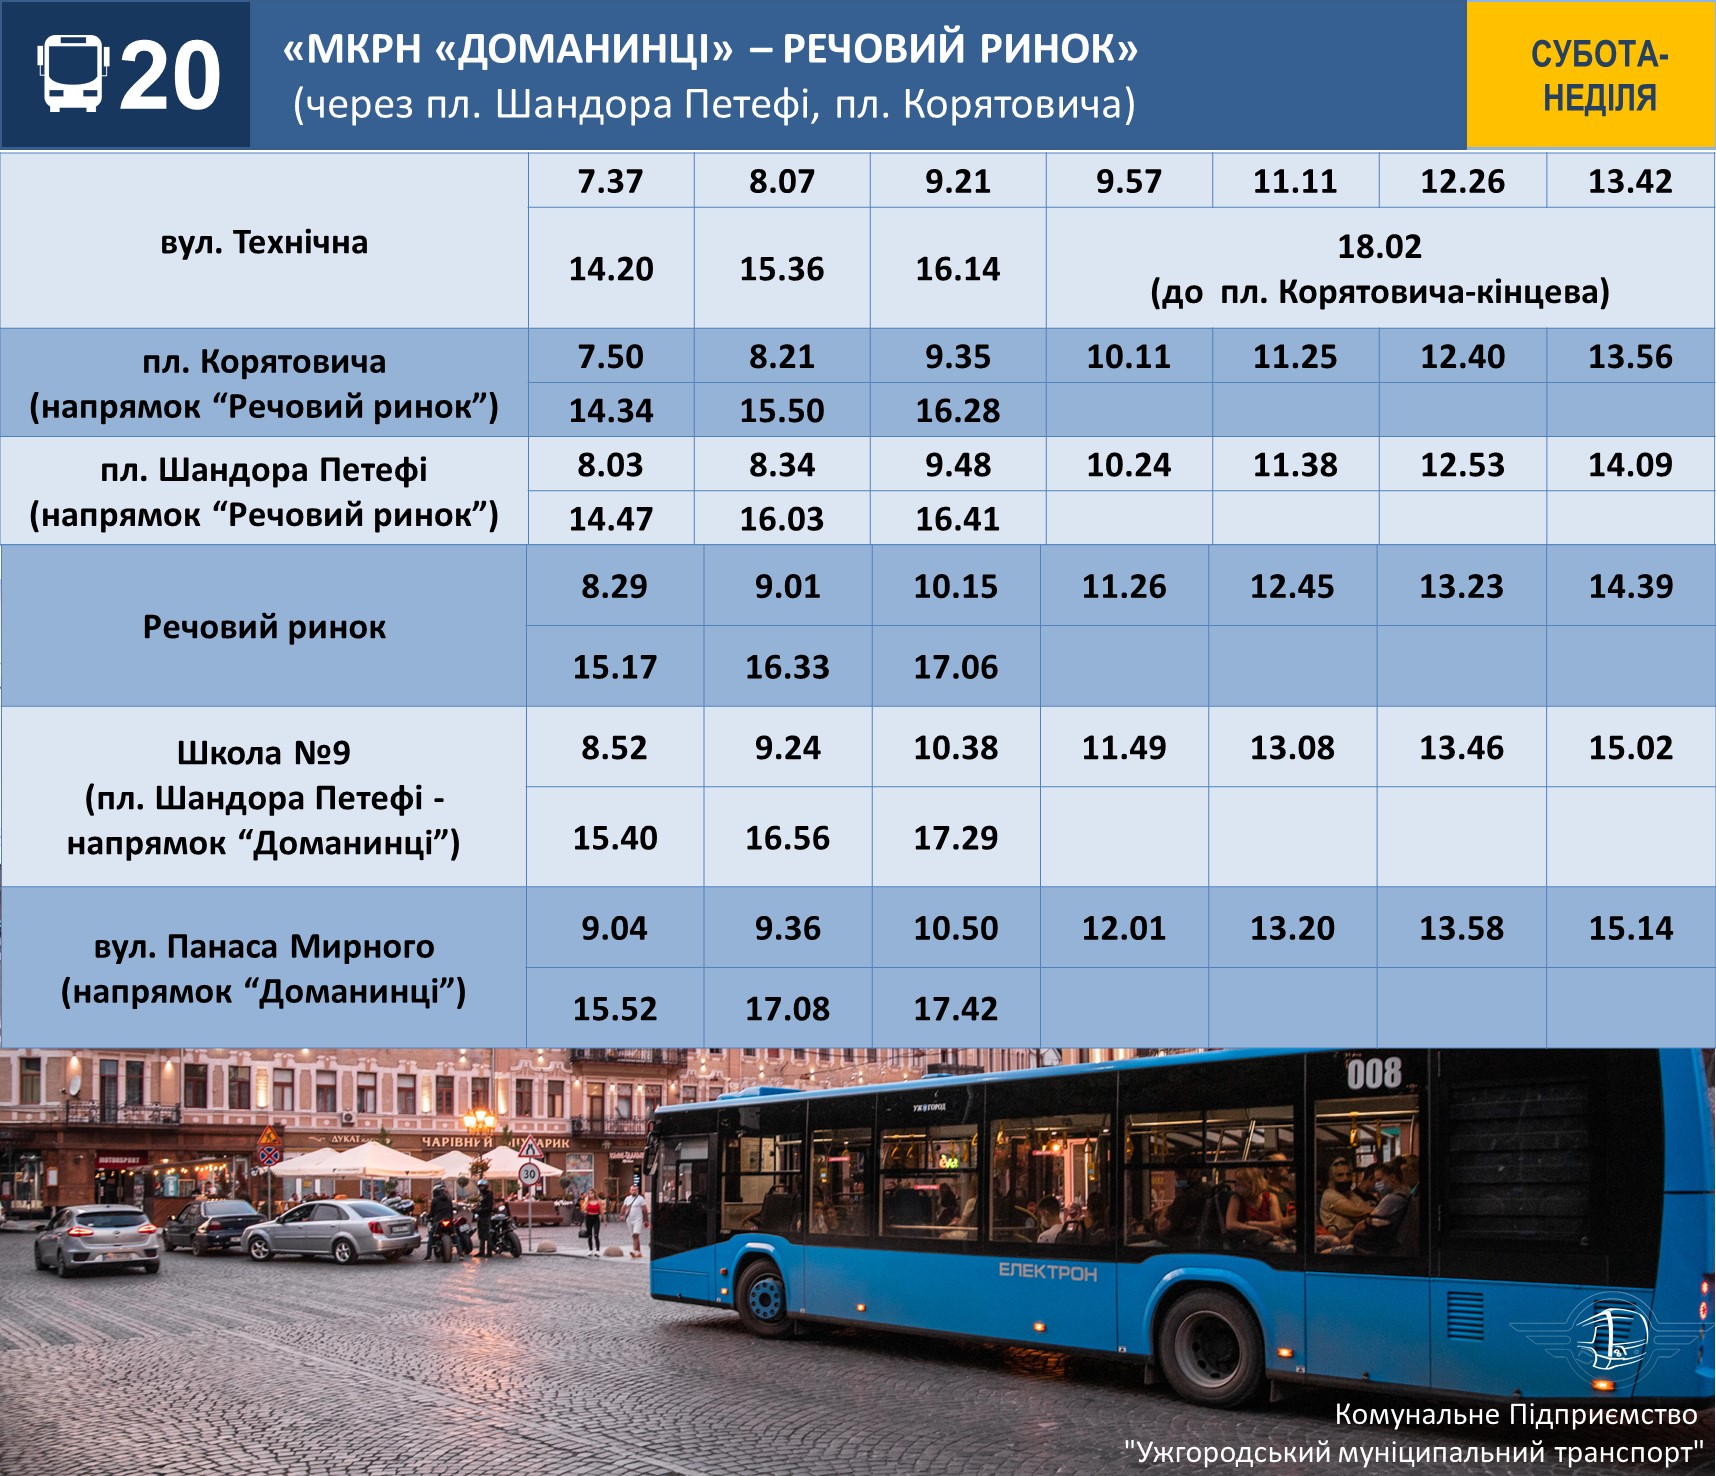 Ужгородська міськрада оприлюднила розклади руху комунальних автобусів у місті на вихідні